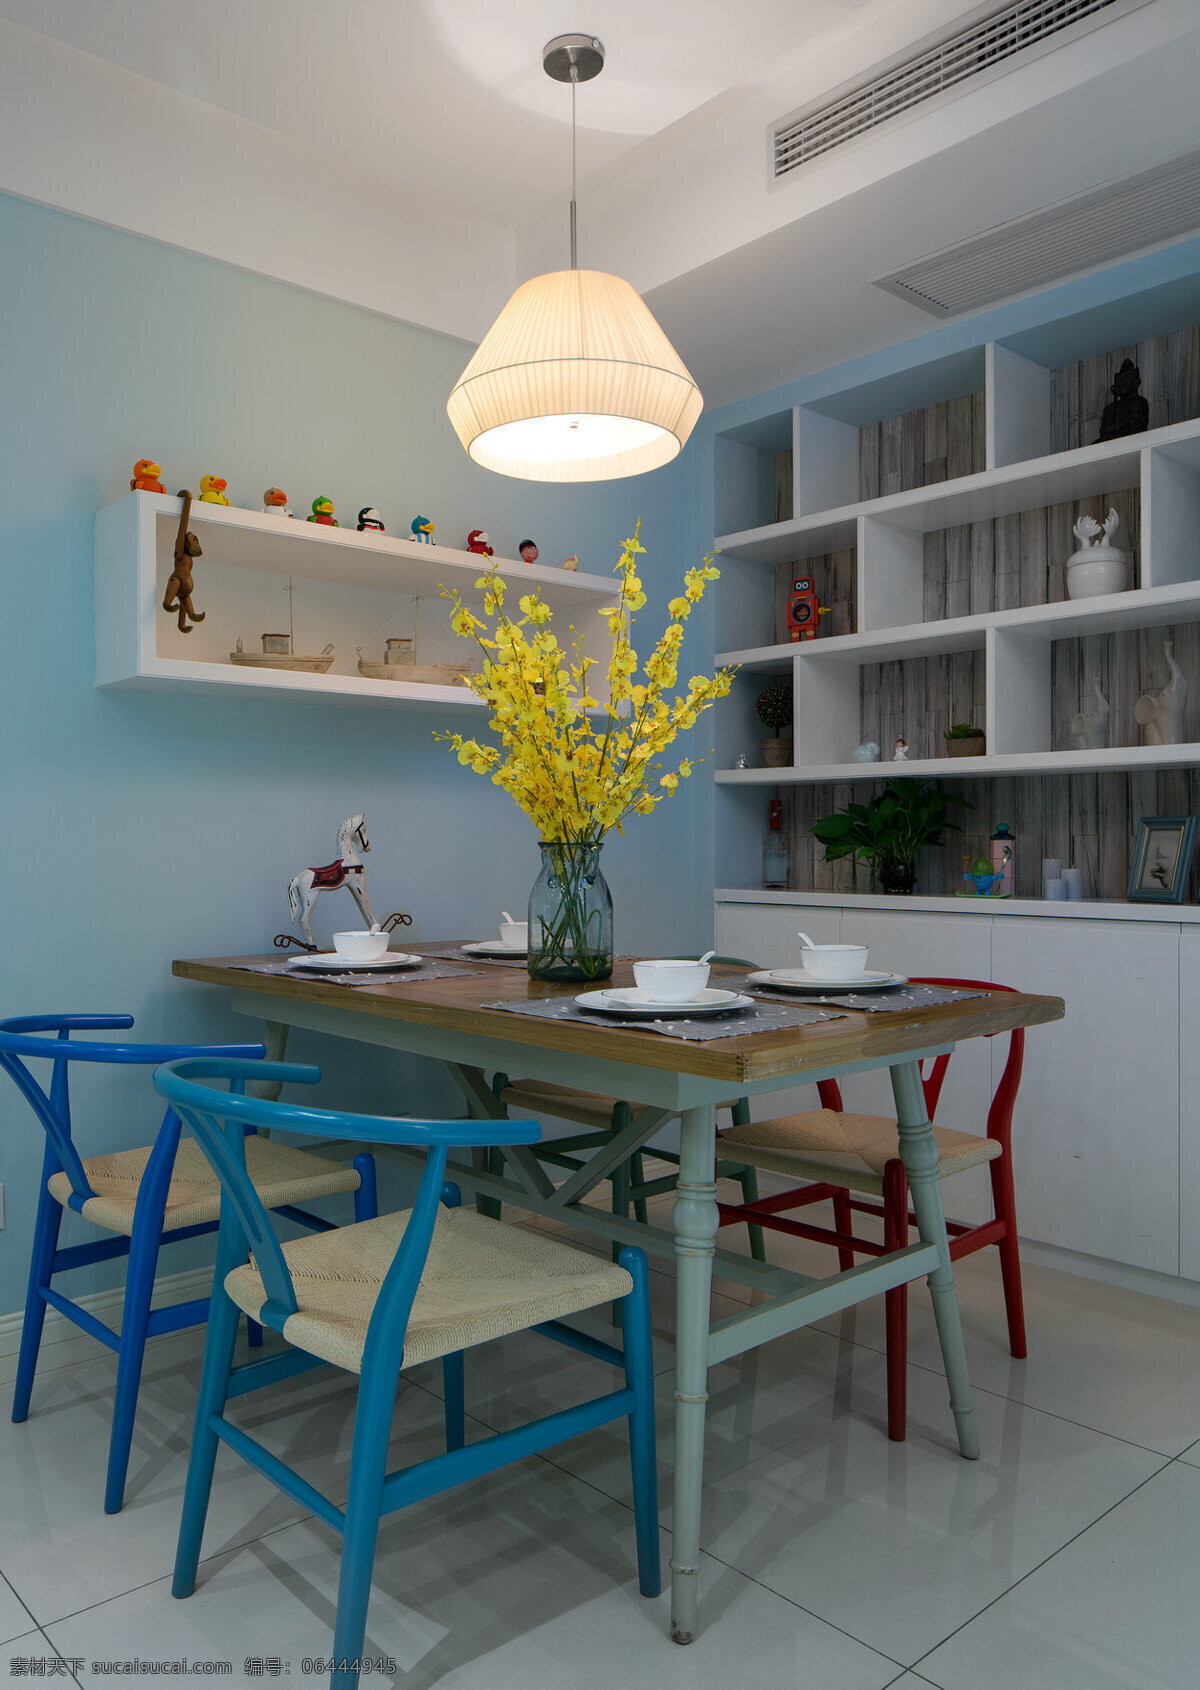 时尚 青春 客厅 蓝色 椅子 室内装修 效果图 白色展示架 灰色地板 客厅装修 浅蓝色背景墙